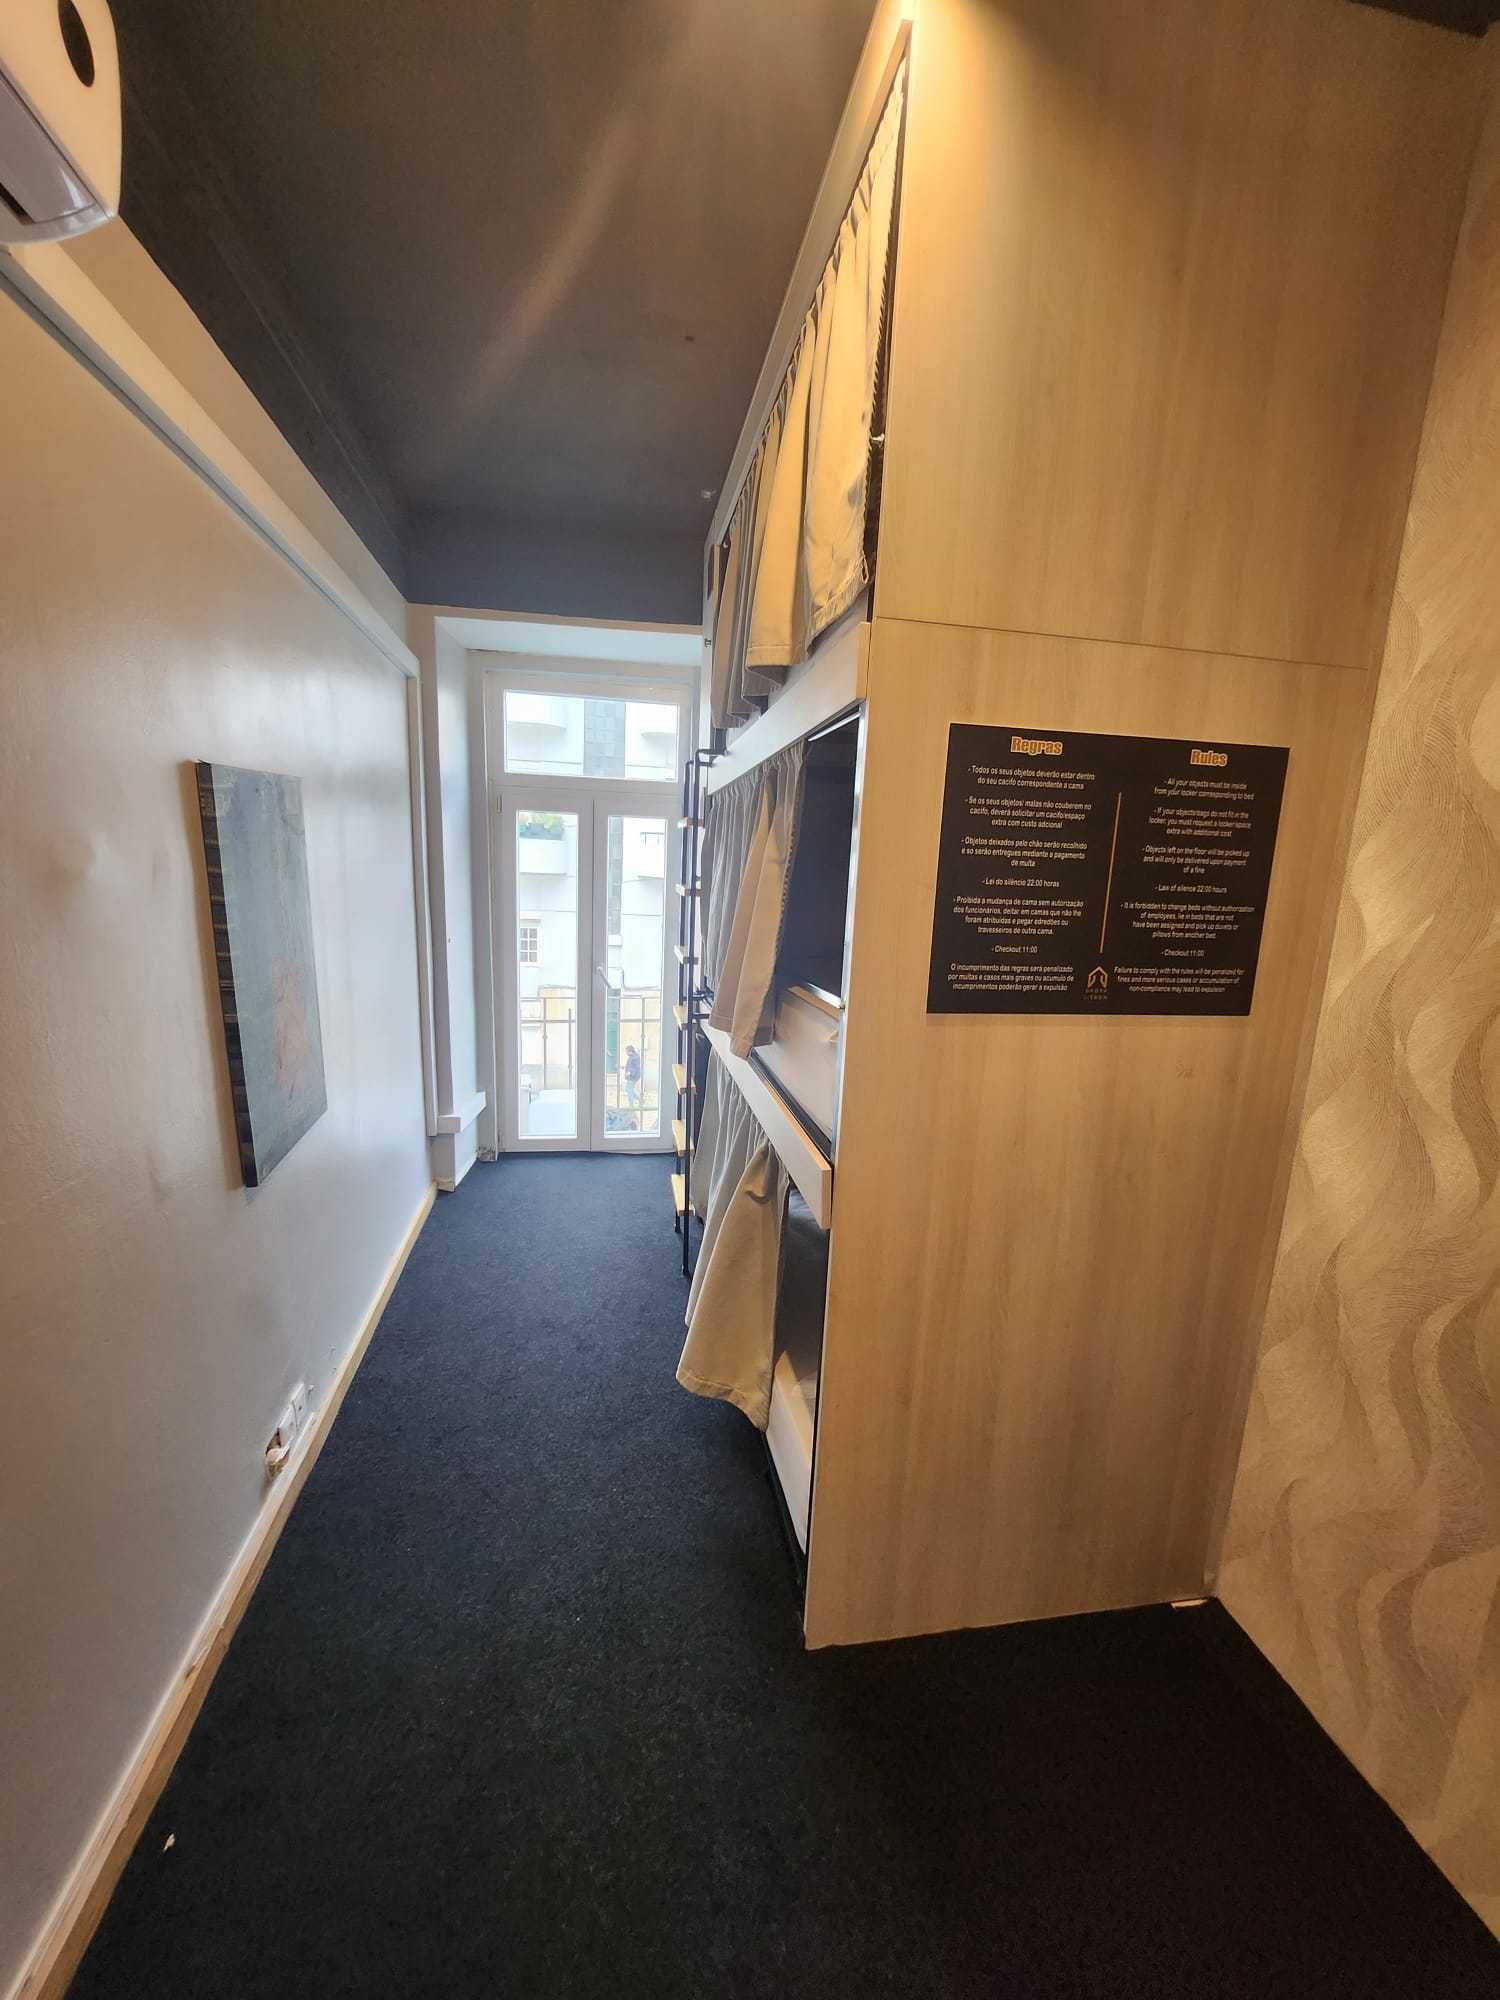 cama partilhada, quarto ou apartamento apartir de 250 euros